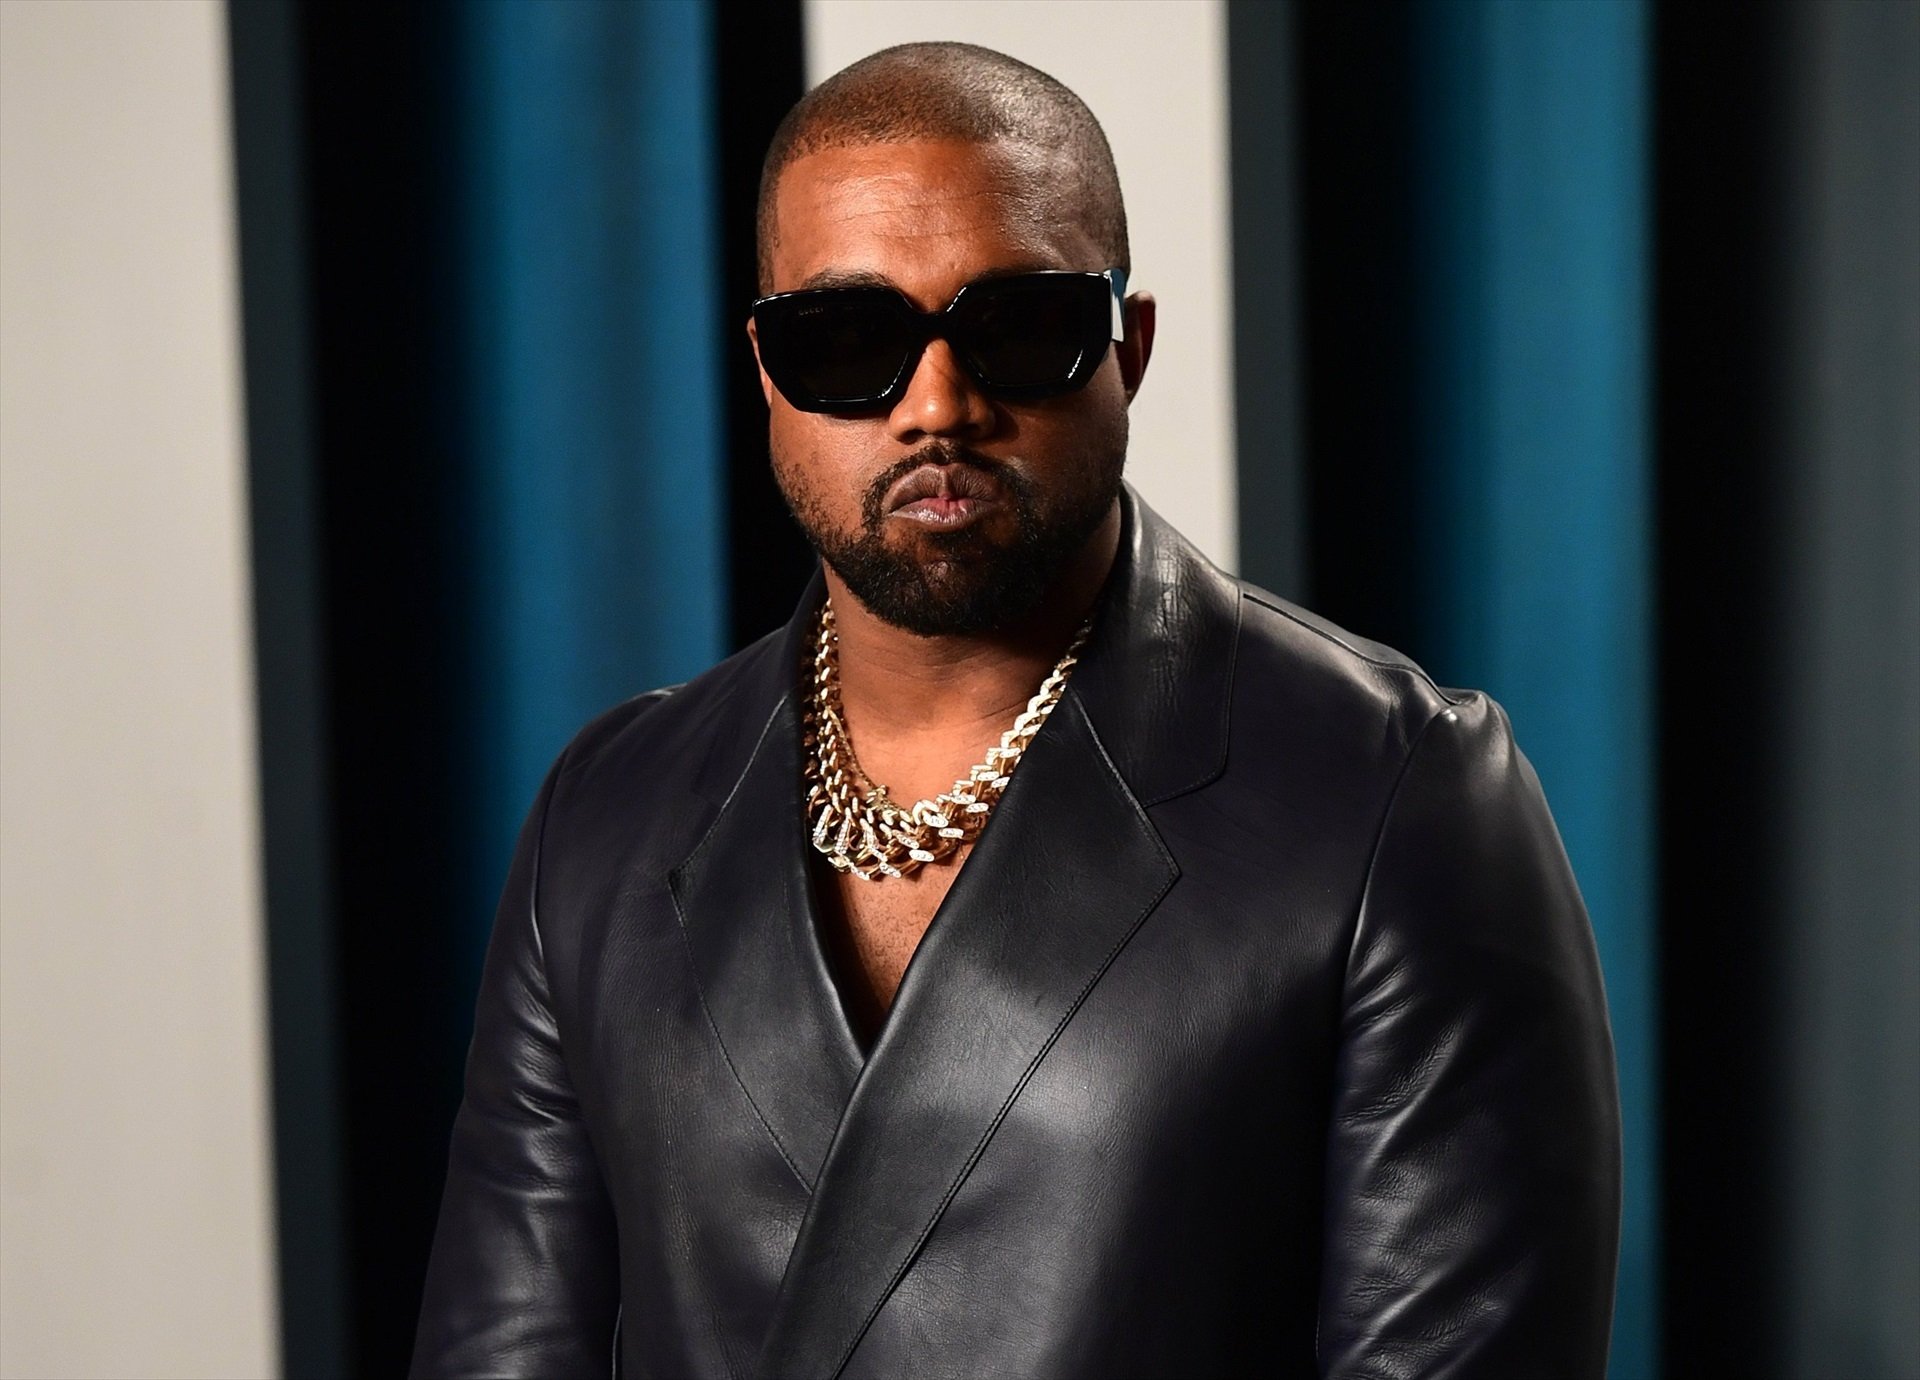 Kanye West, demandat per assetjament sexual per la seva exassistenta